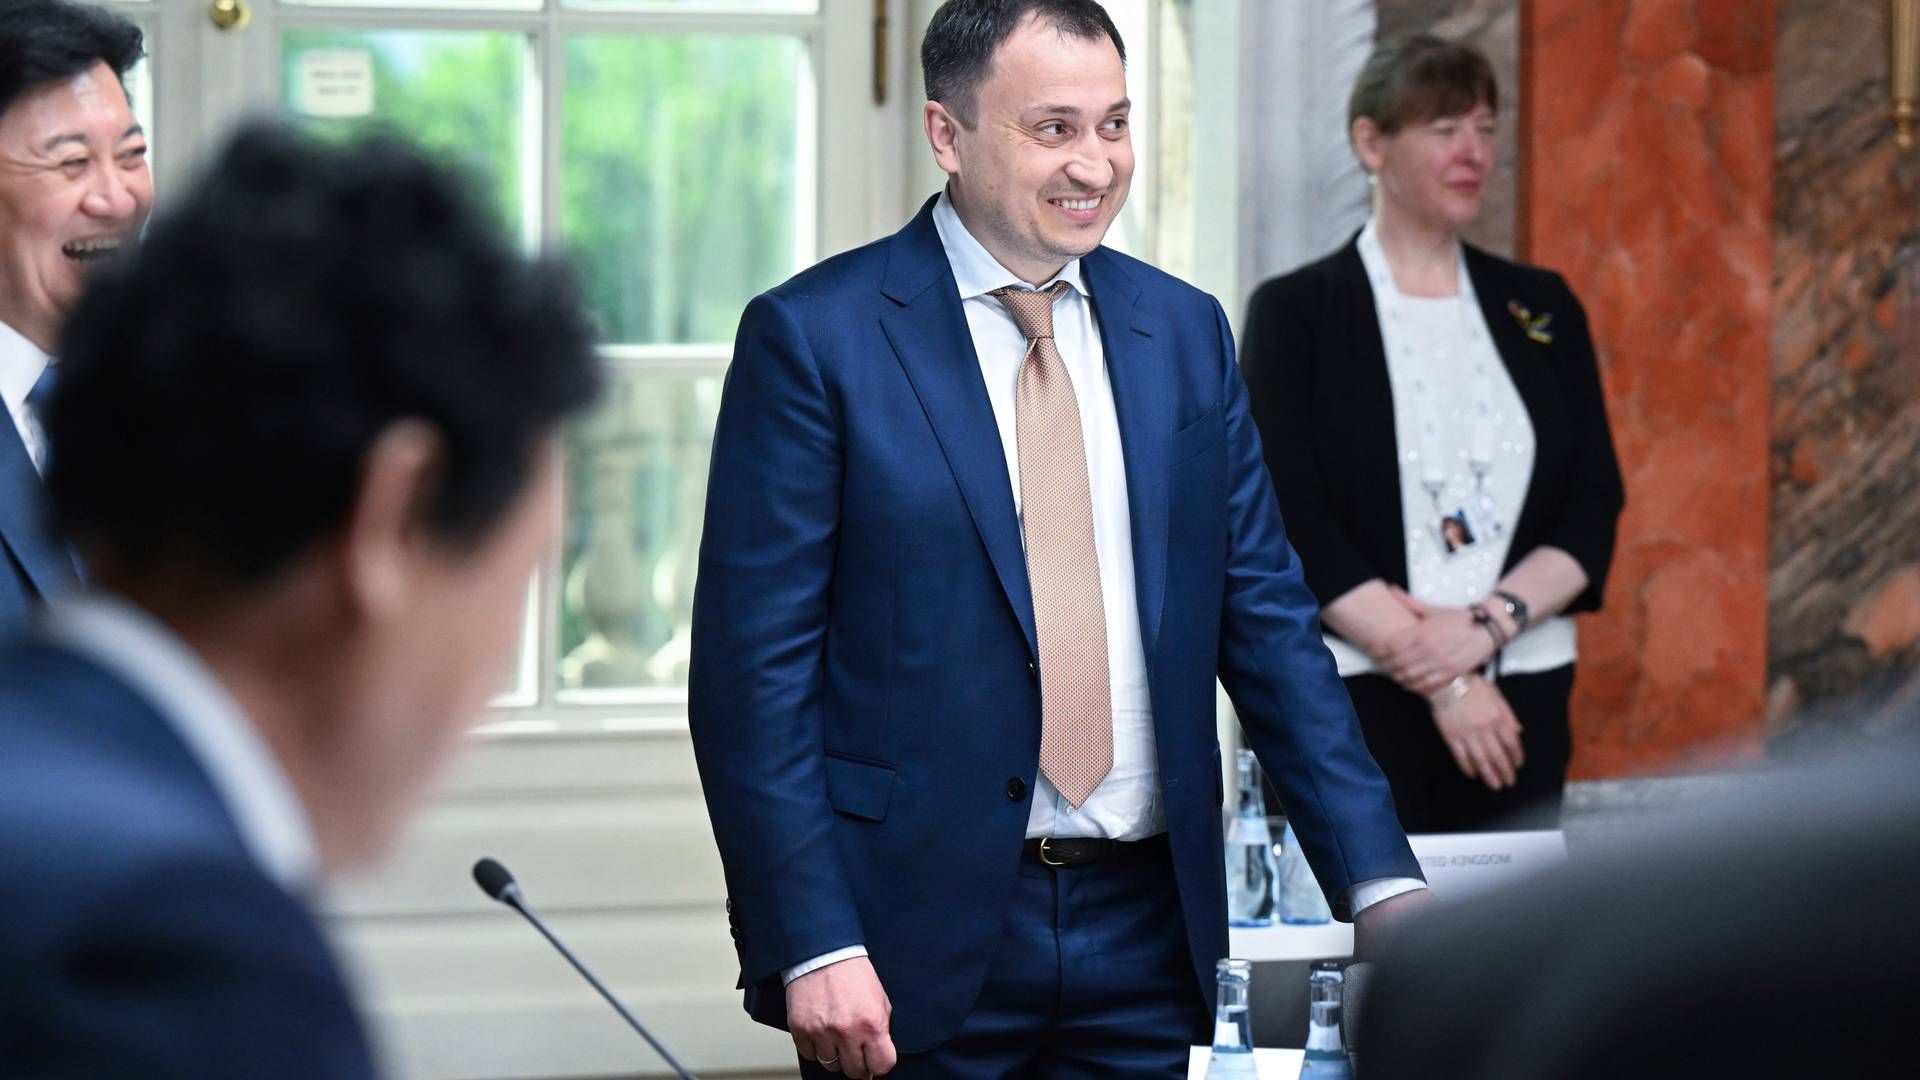 Ukraines landbrugsminister, Mykola Solskyj er anklaget i en sag om ulovligt opkøb af statsejet jord. | Foto: Bernd Wei'brod/AP/Ritzau Scanpix